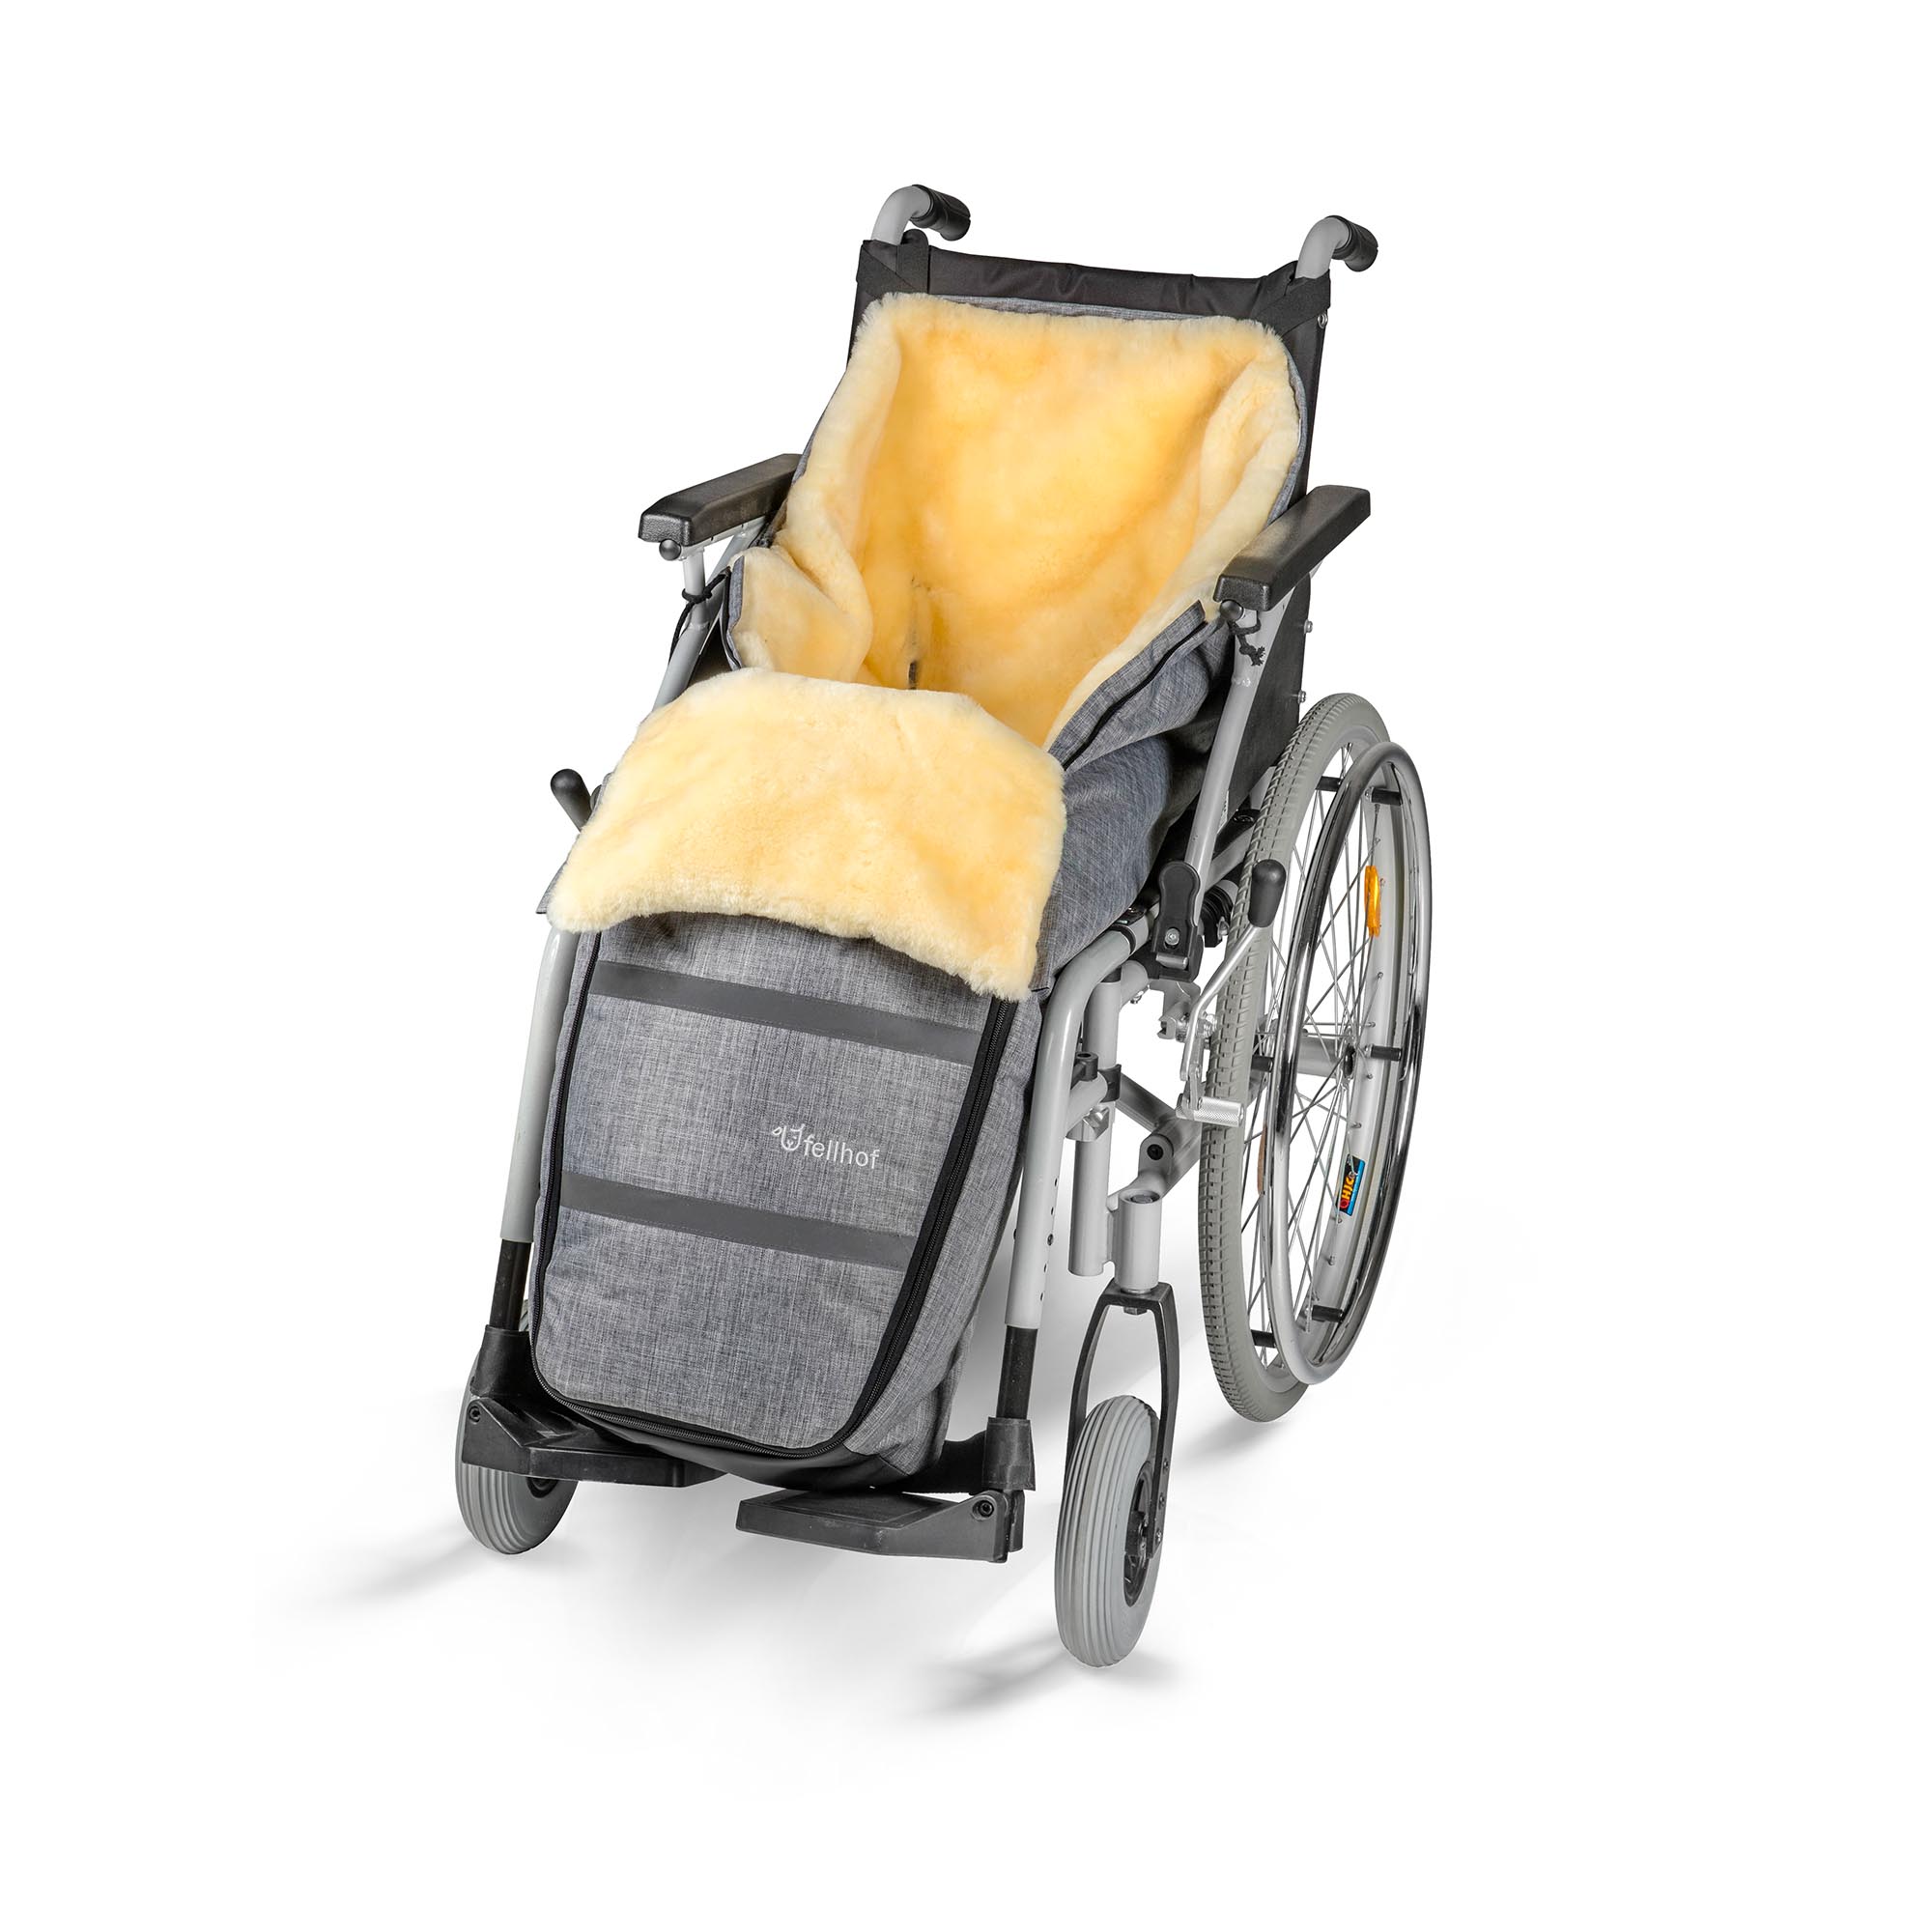 fellhof rolstoelslipzak met lamsvacht, wind- en waterafstotend, kleur: zwart-melange in verschillende maten